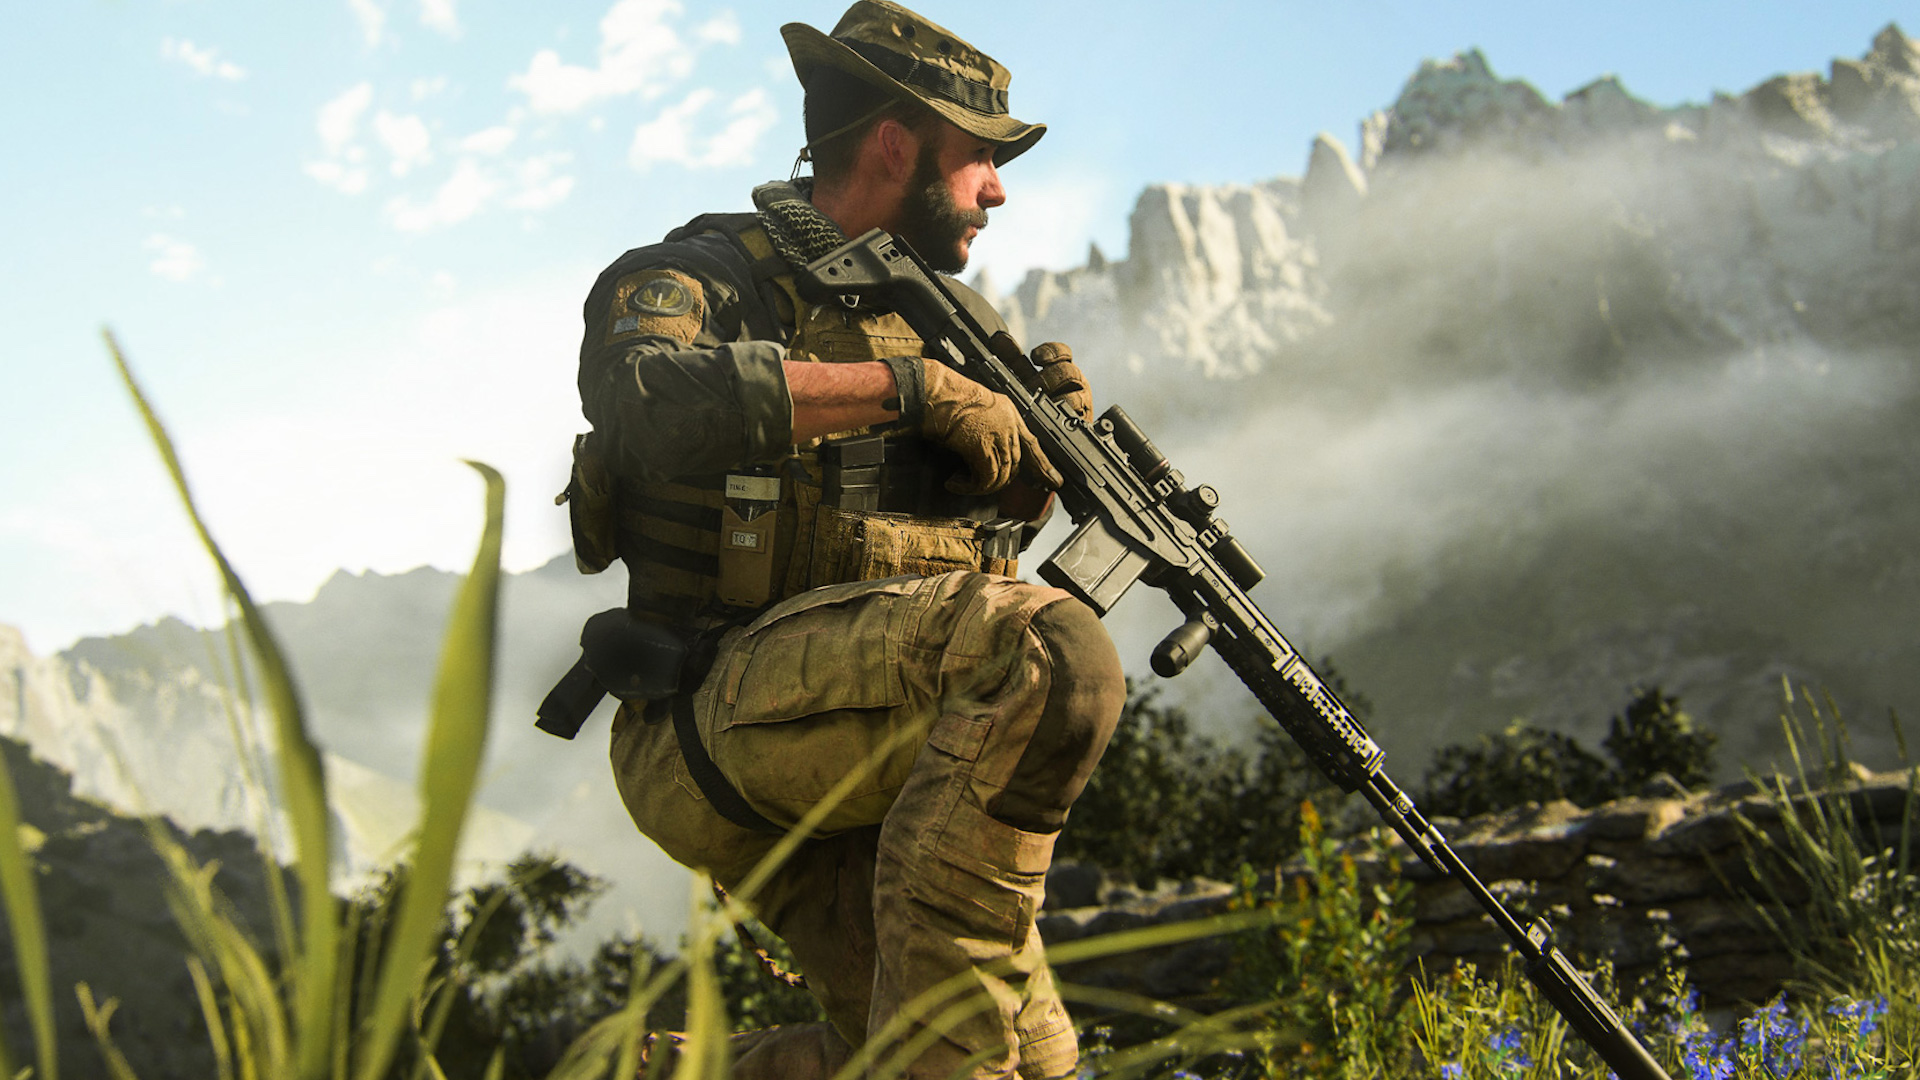 Le jeu Call of Duty Modern Warfare III offert pour l'achat d'un TV